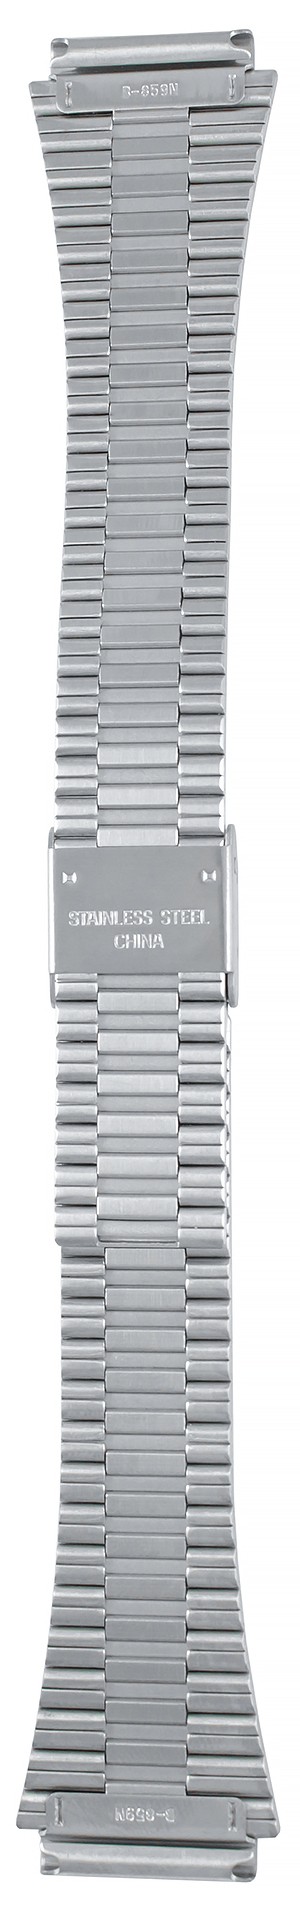 Браслет для часов Casio DB-520A (цвет: Серебряный, материал: Нержавеющая сталь) - купить в интернет-магазине Watchband.ru.